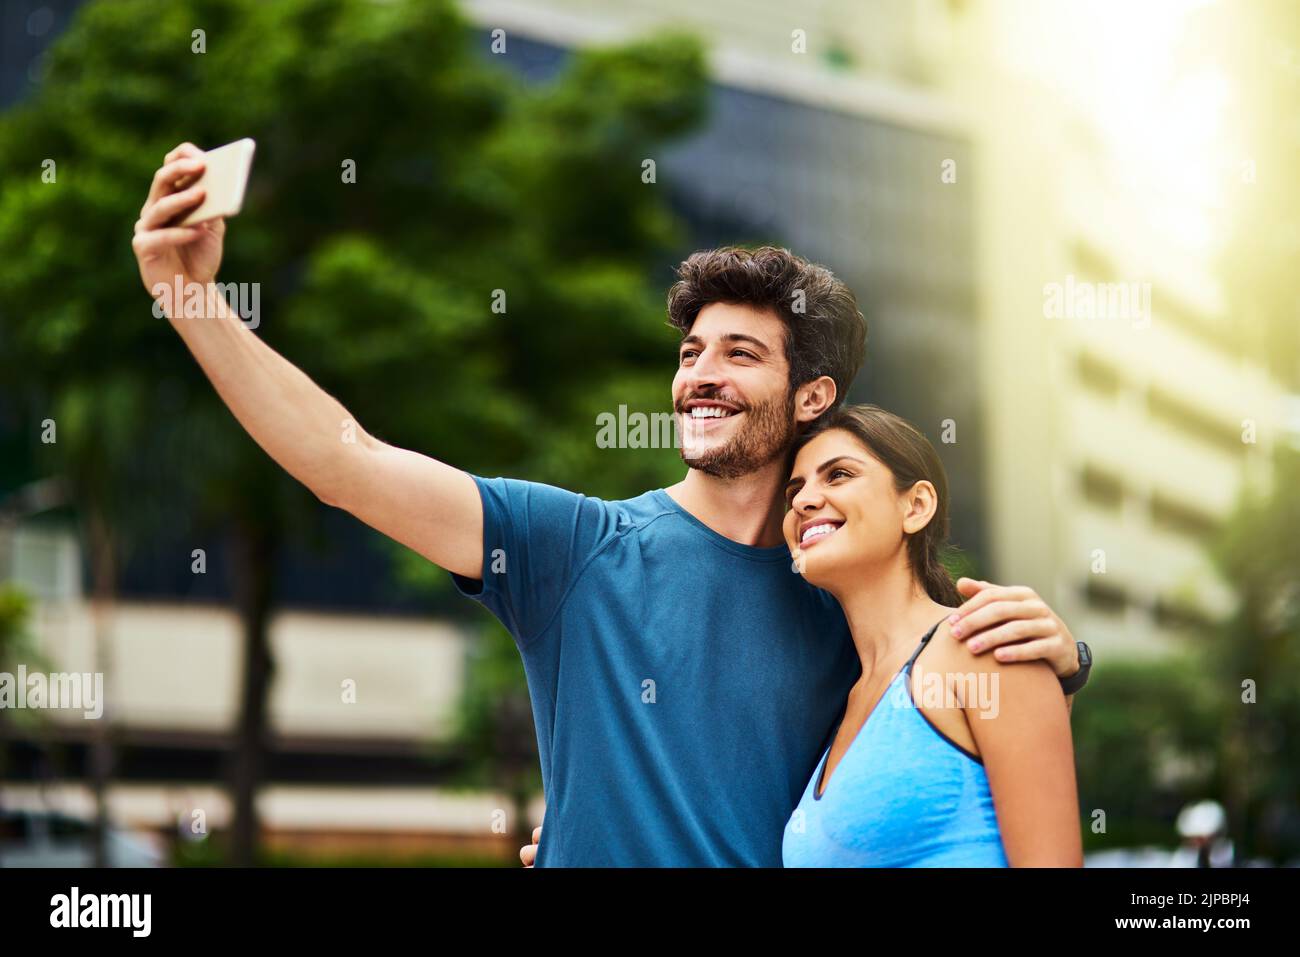 Wir haben unsere Fitnessziele mit der Welt geteilt. Ein sportliches junges Paar, das gemeinsam im Freien ein Selfie gemacht hat. Stockfoto